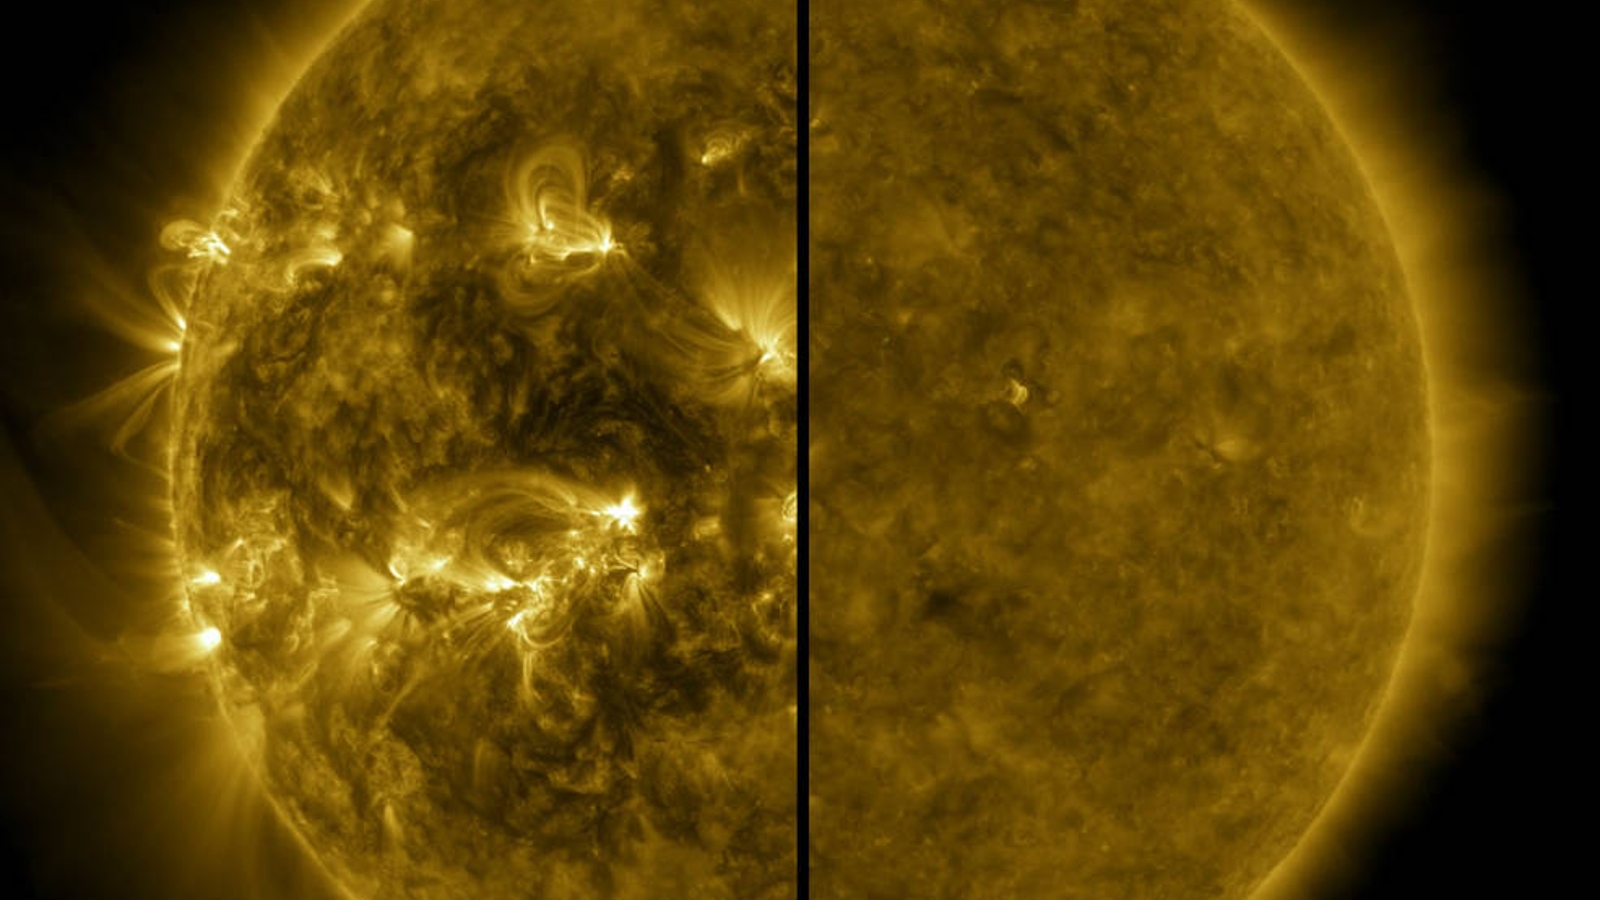 Изображение на слънце, разделено наполовина.  Лявата страна показва слънцето по време на слънчевия максимум, където е по-огнено и хаотично, а дясната страна показва звездата по време на слънчевия минимум, когато е по-спокойно и гладко